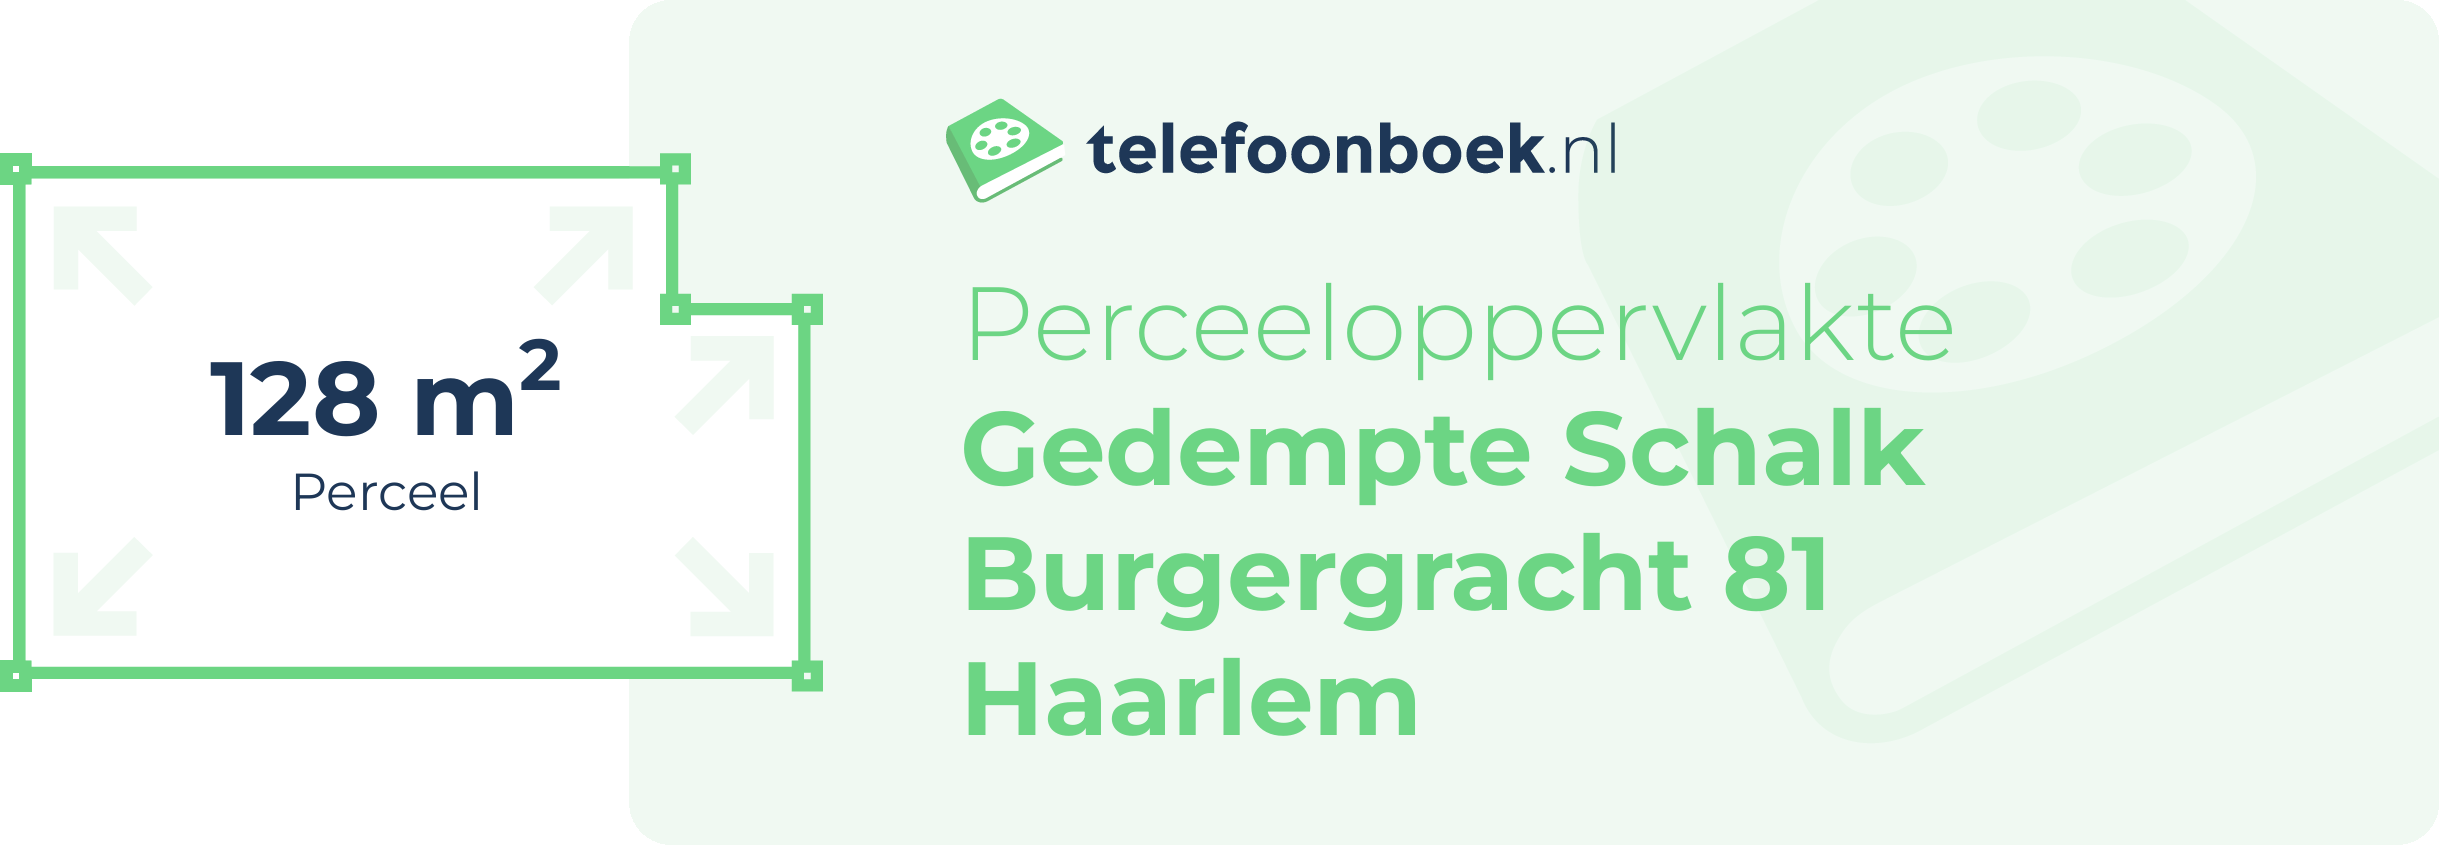 Perceeloppervlakte Gedempte Schalk Burgergracht 81 Haarlem